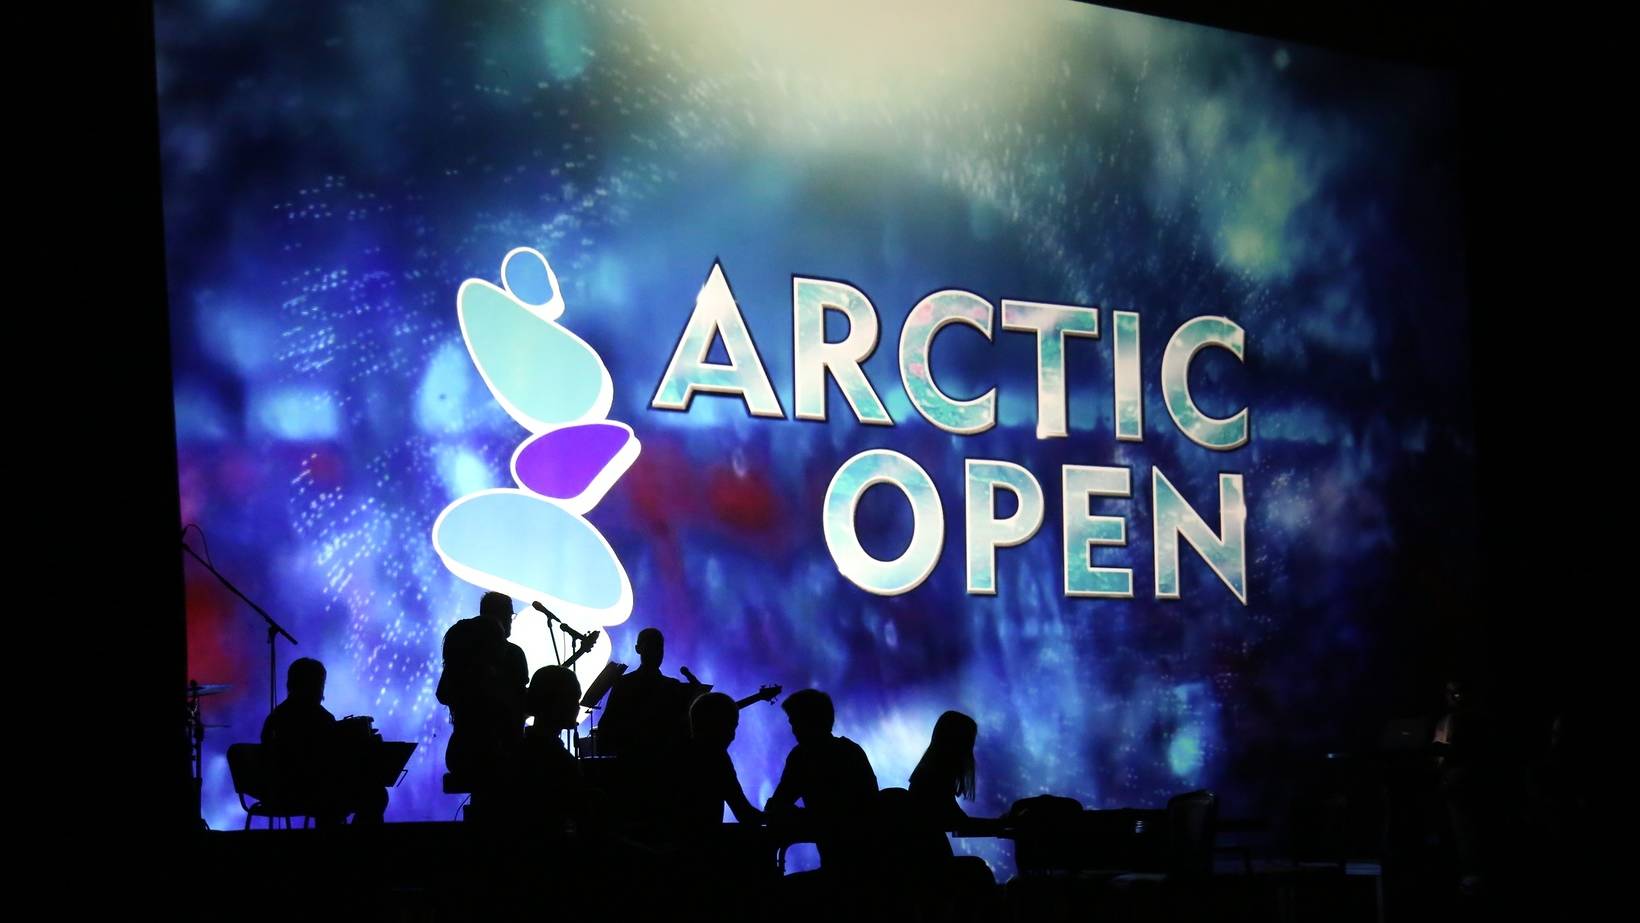 Международный кинофестиваль Arctic open-2020 в Архангельской области пройдёт без конкурсной программы 